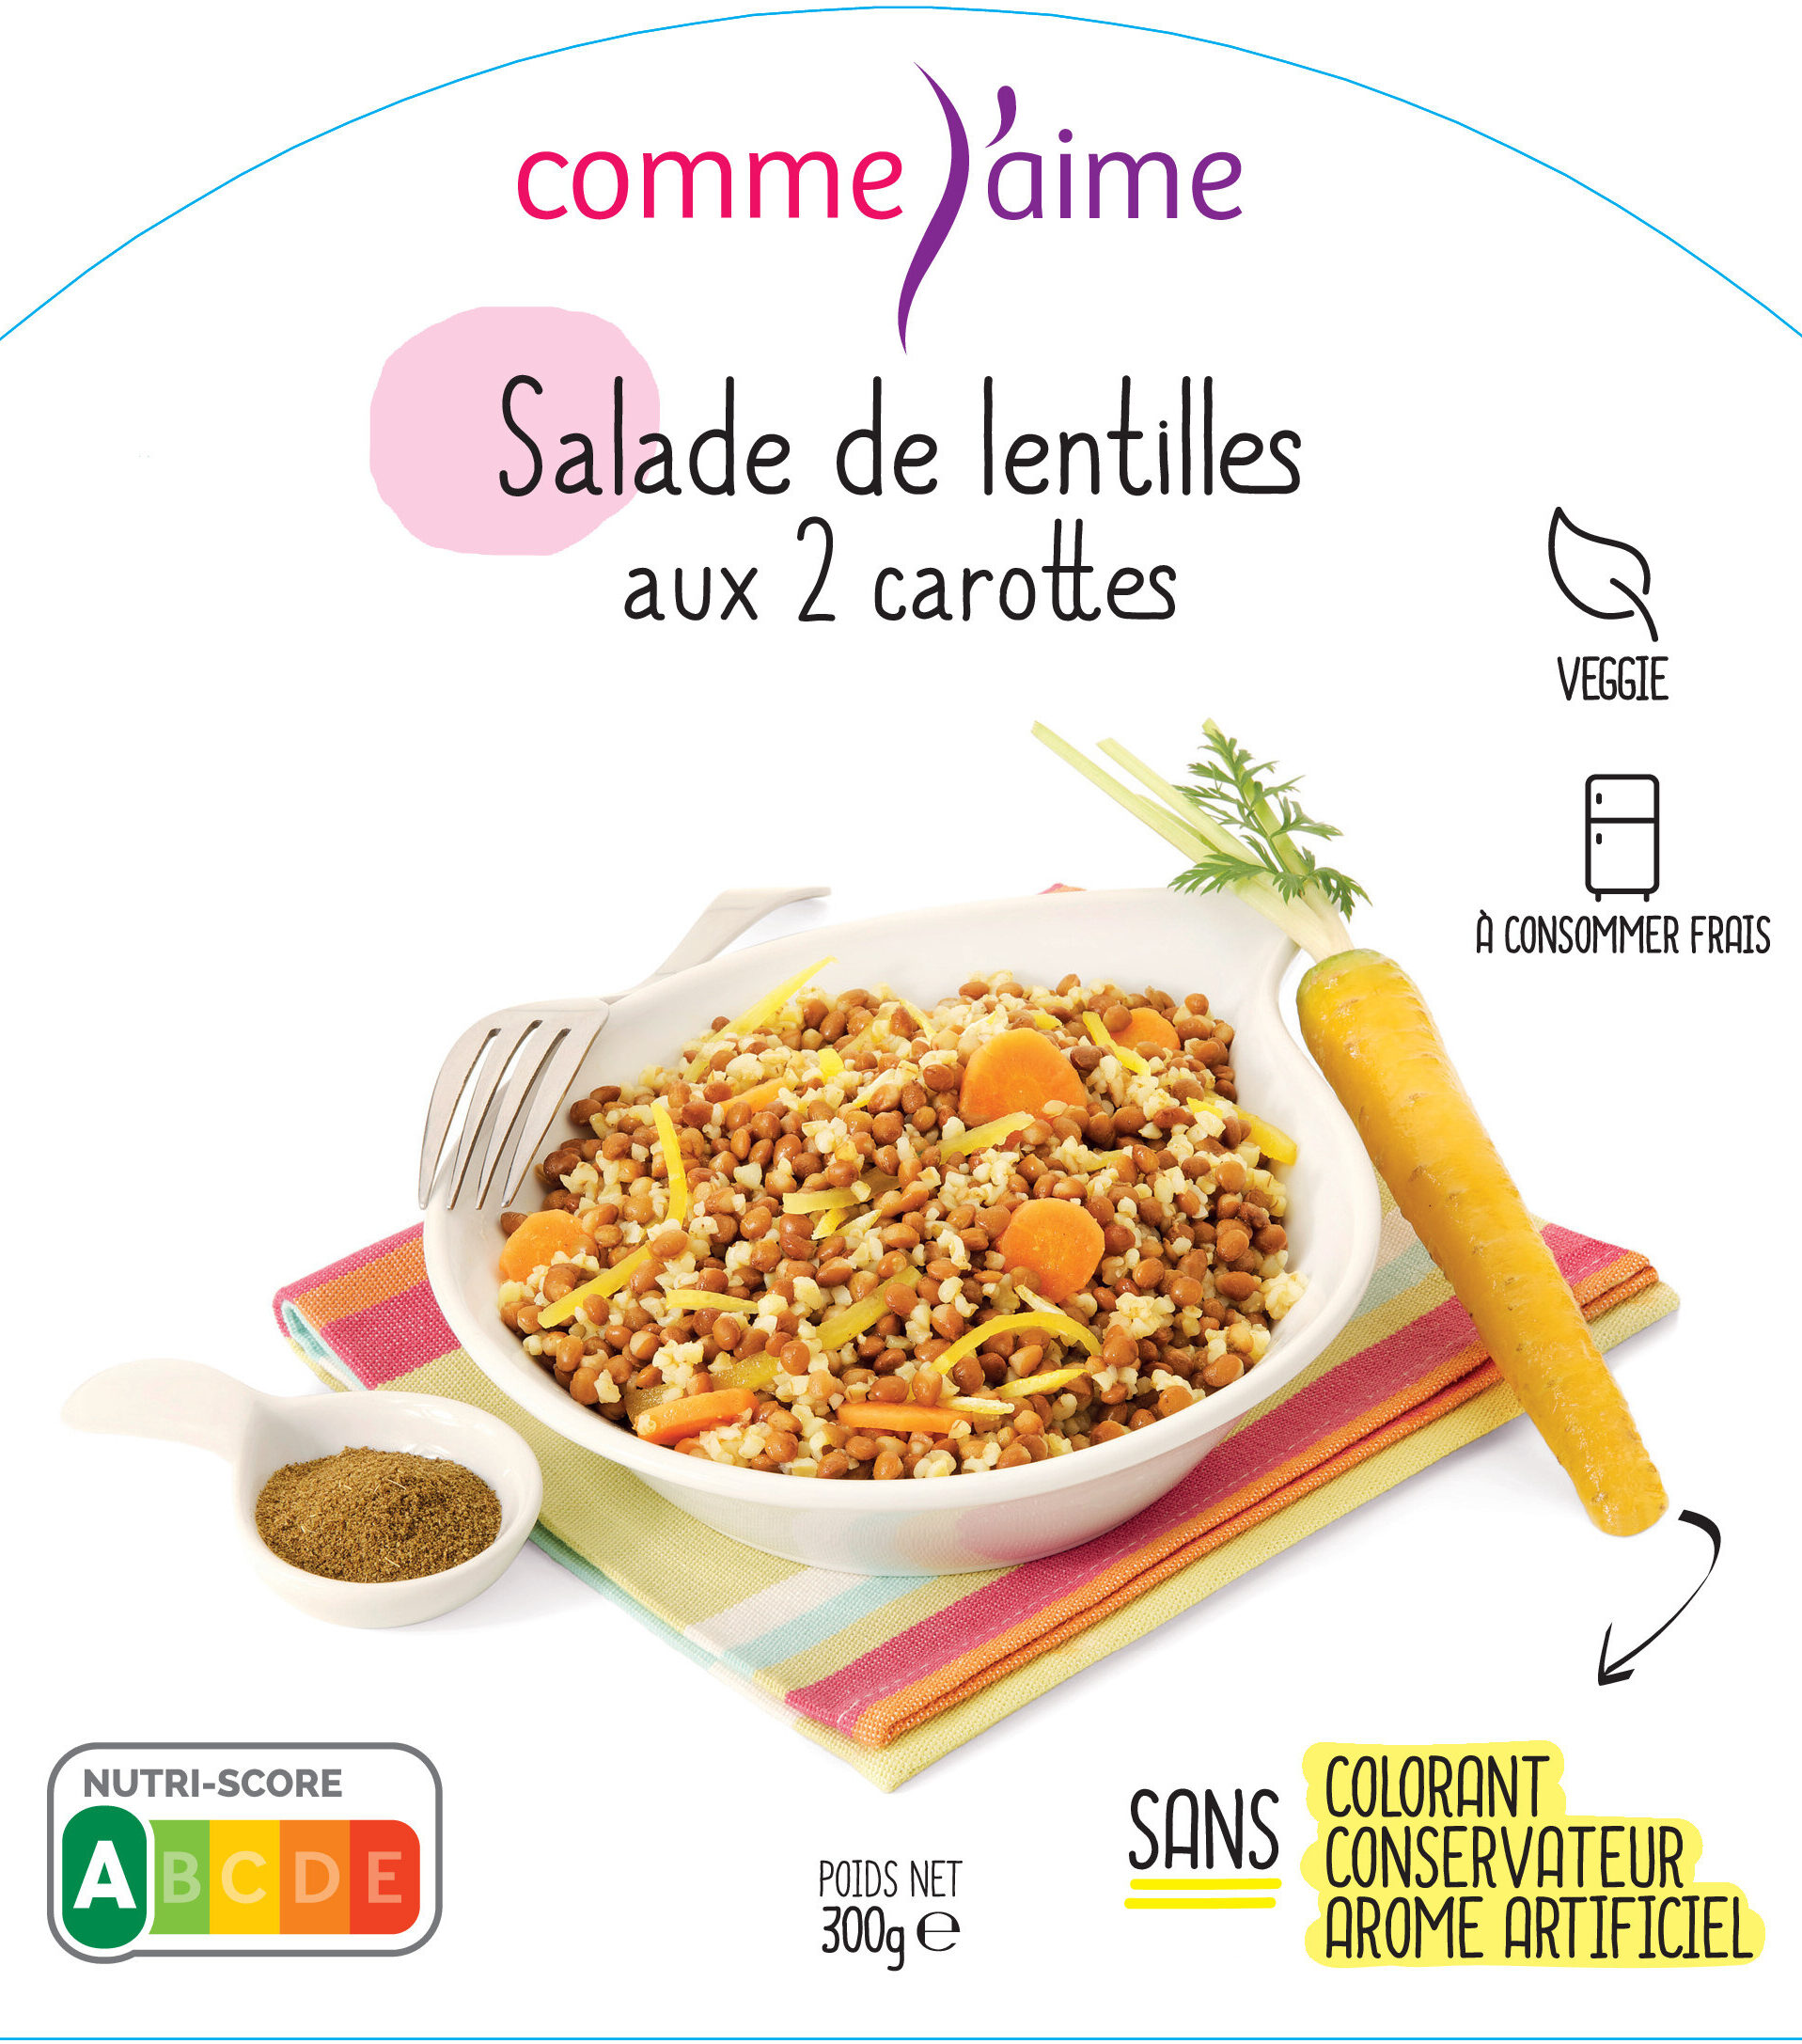 Salade de lentilles aux 2 carottes - Produkt - fr